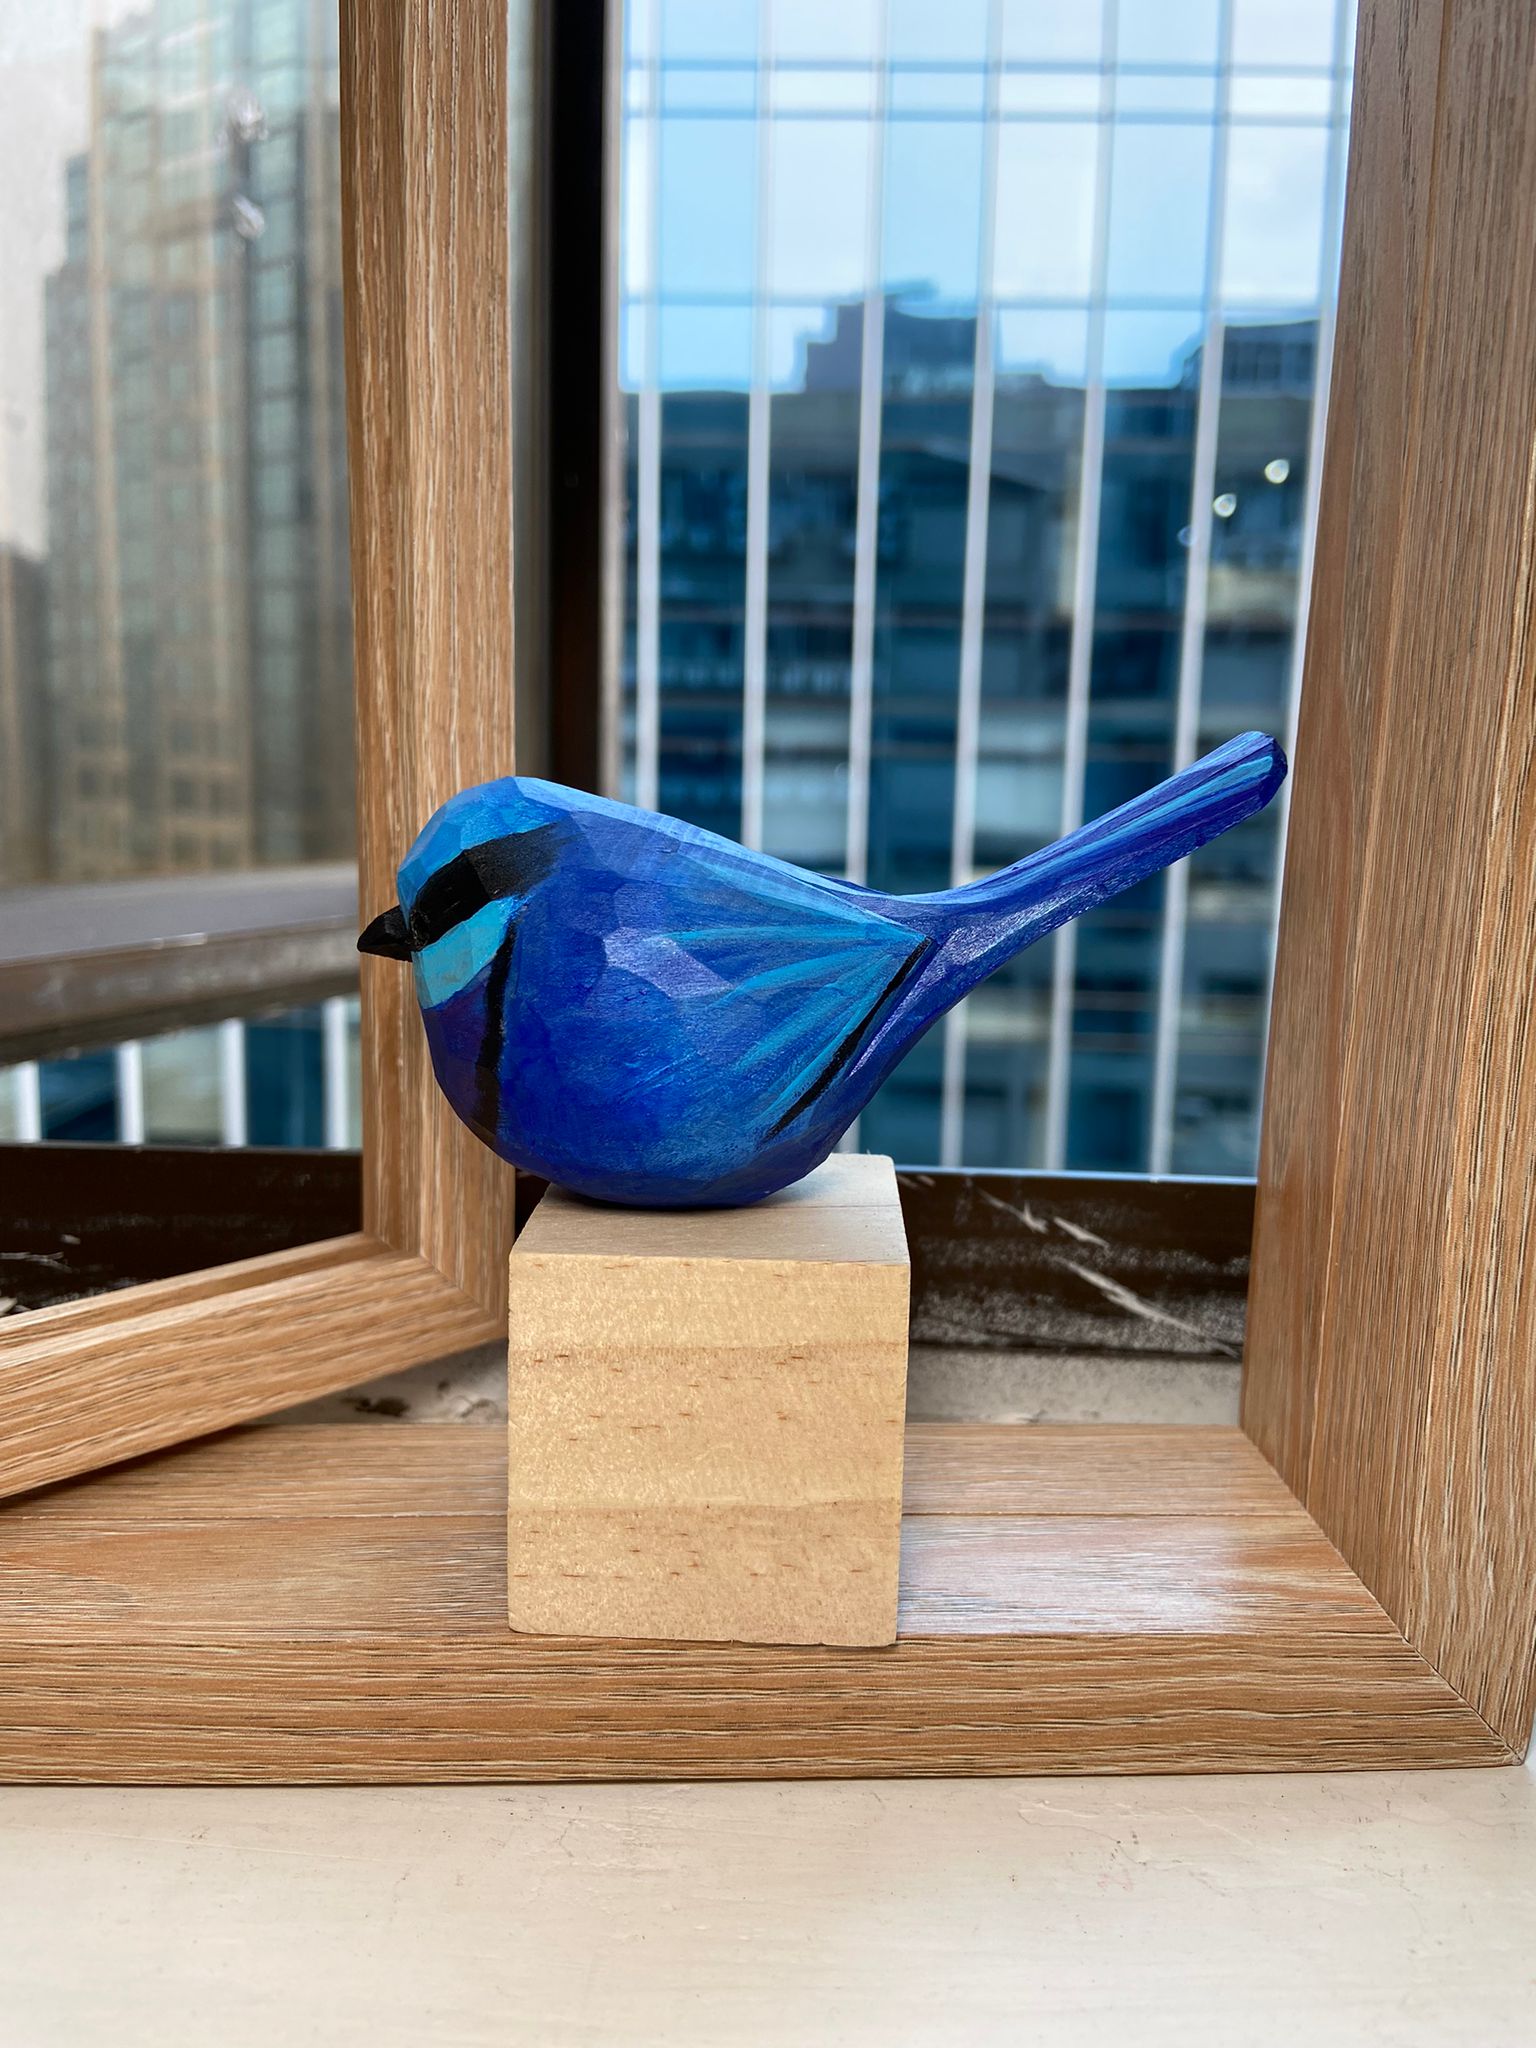 Blue Wren Sculpted Hand-Painted Bird Figurines - Wooden Islands